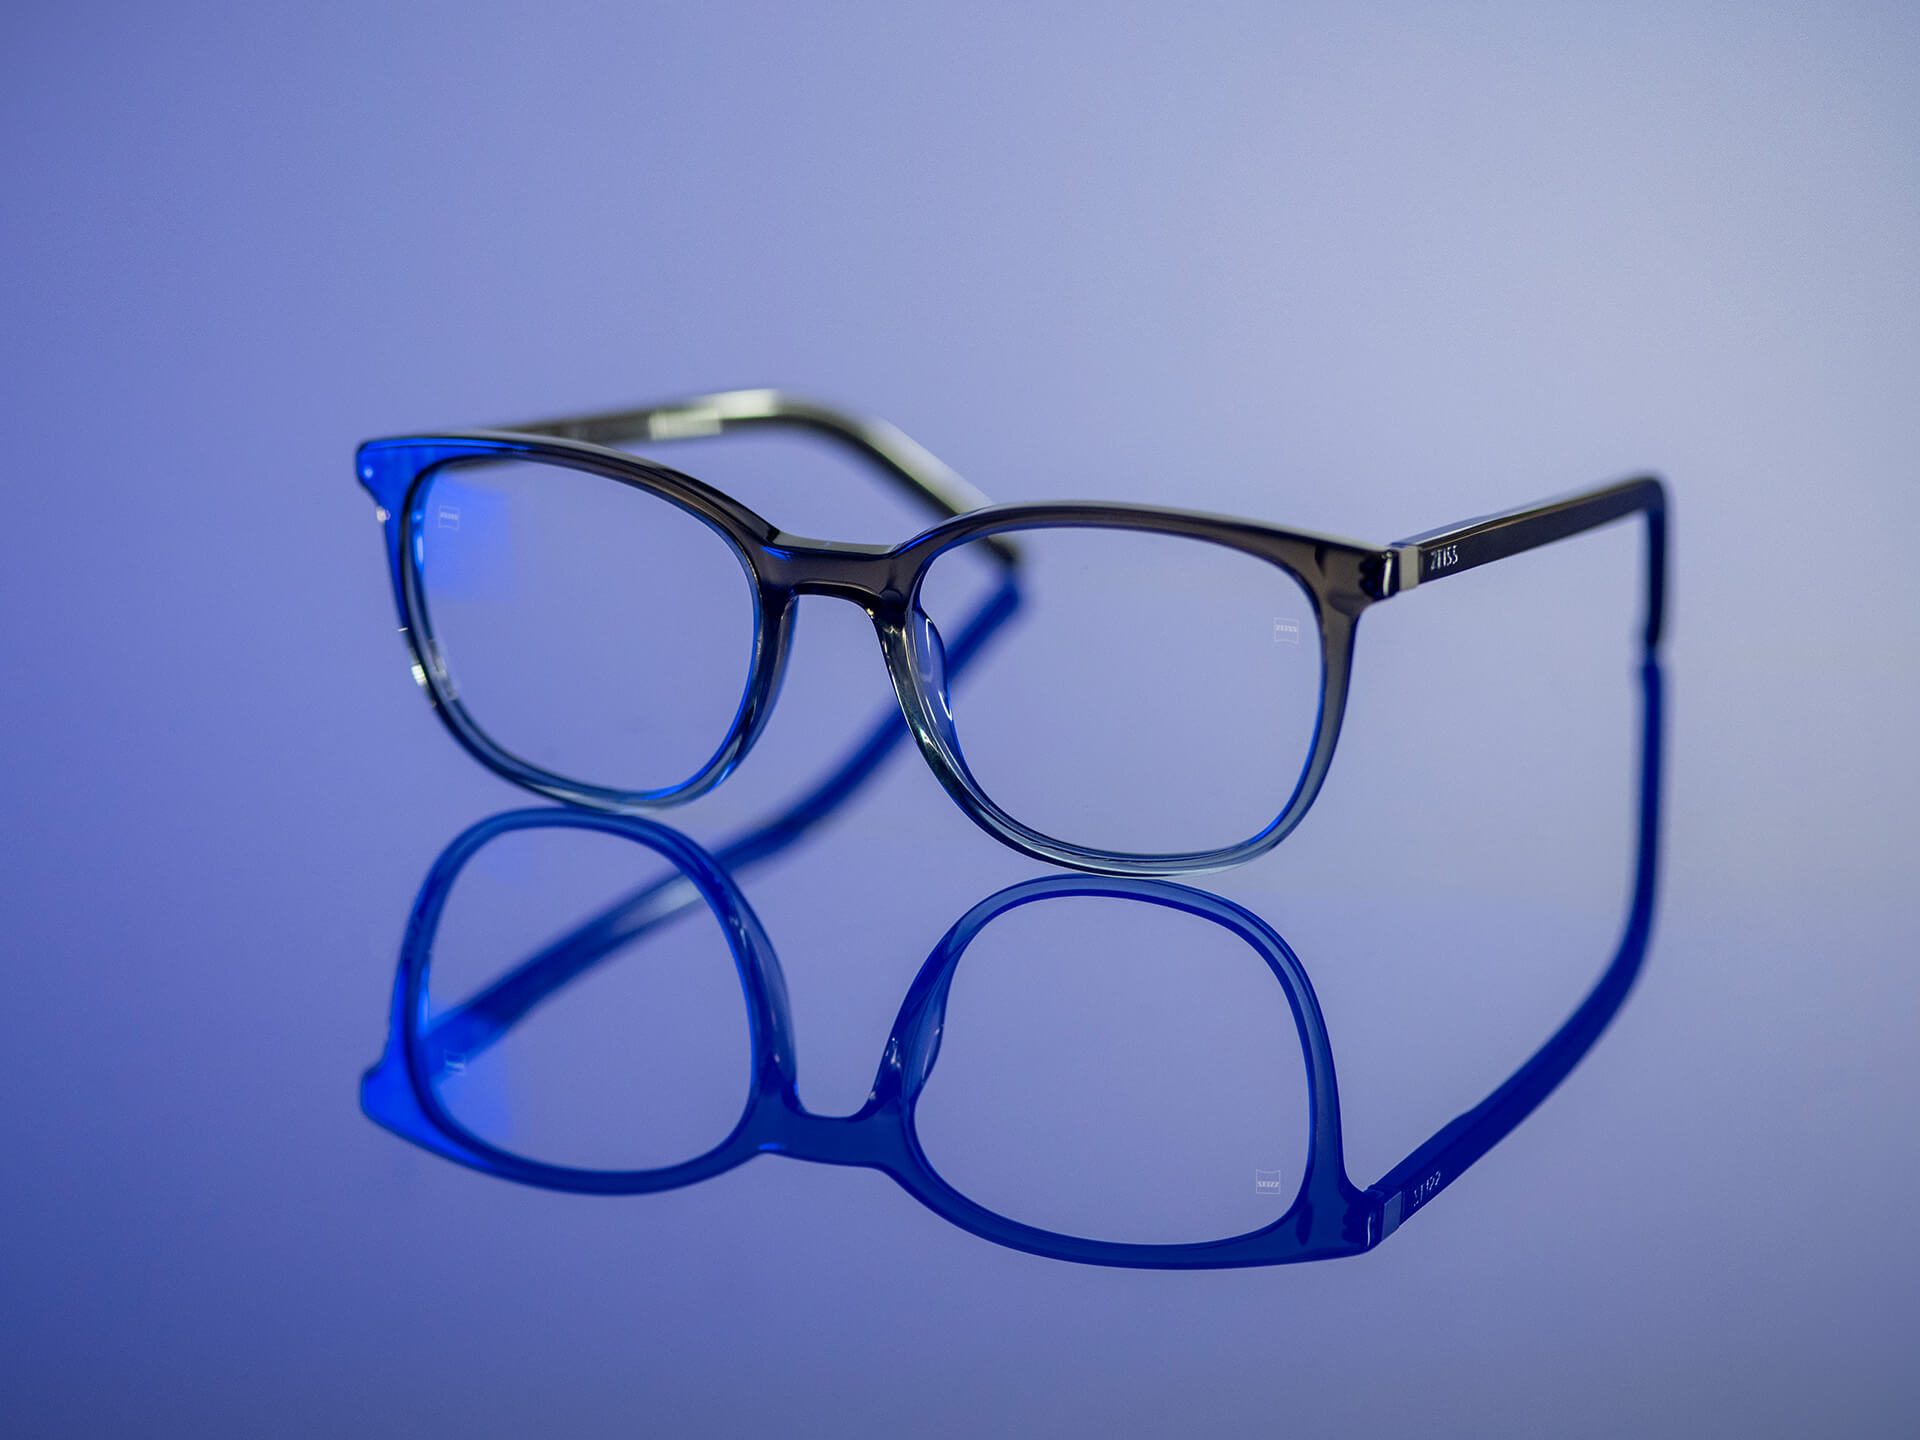 푸르스름한 빛에 안경이 보인다. 자이스 렌즈에 블루가드 렌즈 재질이 적용되어 있다. 렌즈에는 은은한 블루 잔여반사만 눈에 띈다.